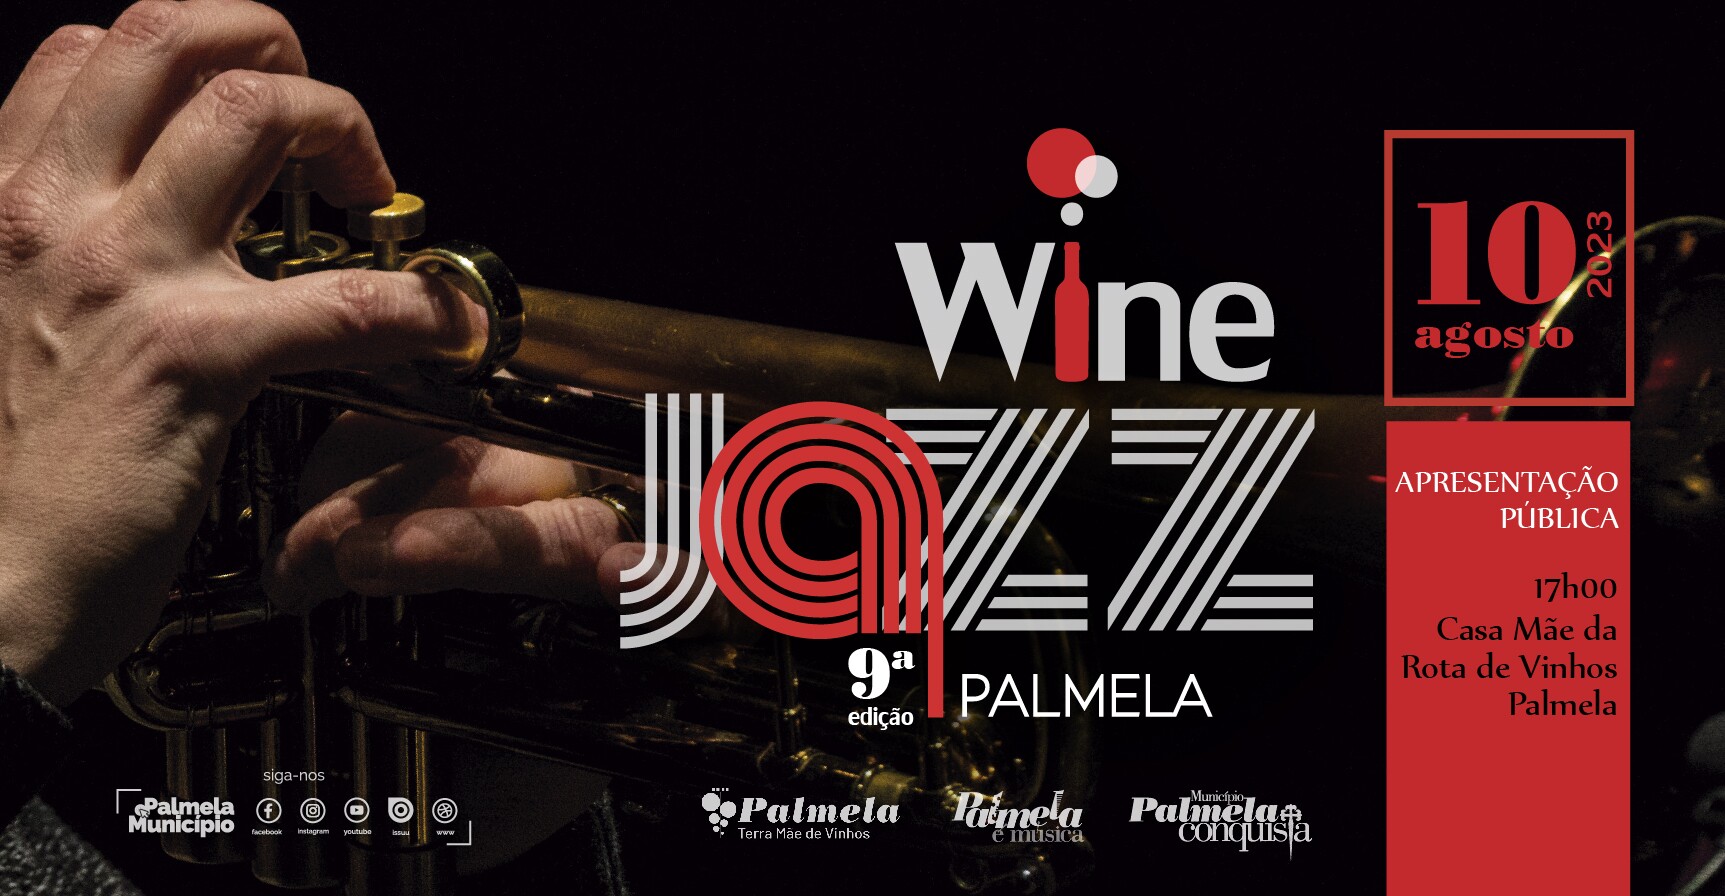 Apresentação Palmela Wine Jazz - final de tarde com música e vinho!